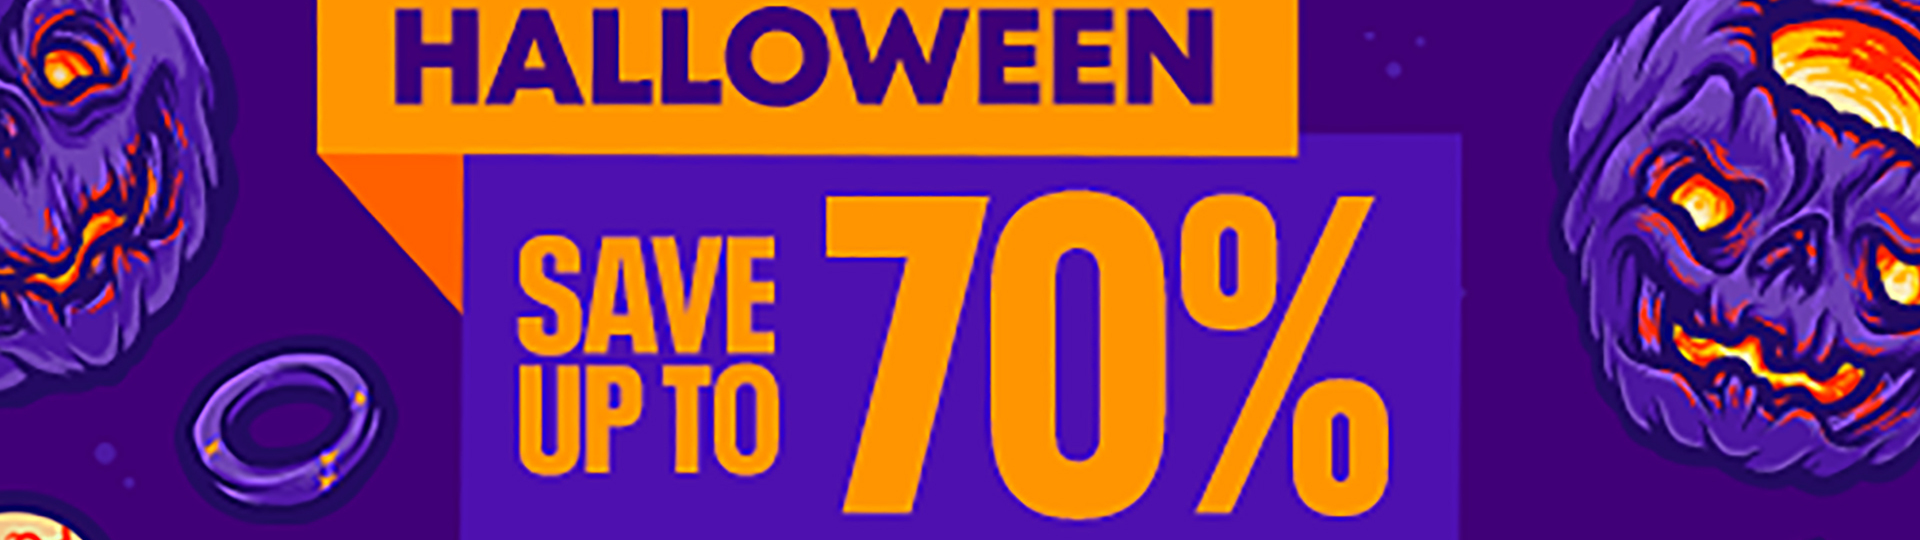 Halloweenské slevy na PS Store | Novinky